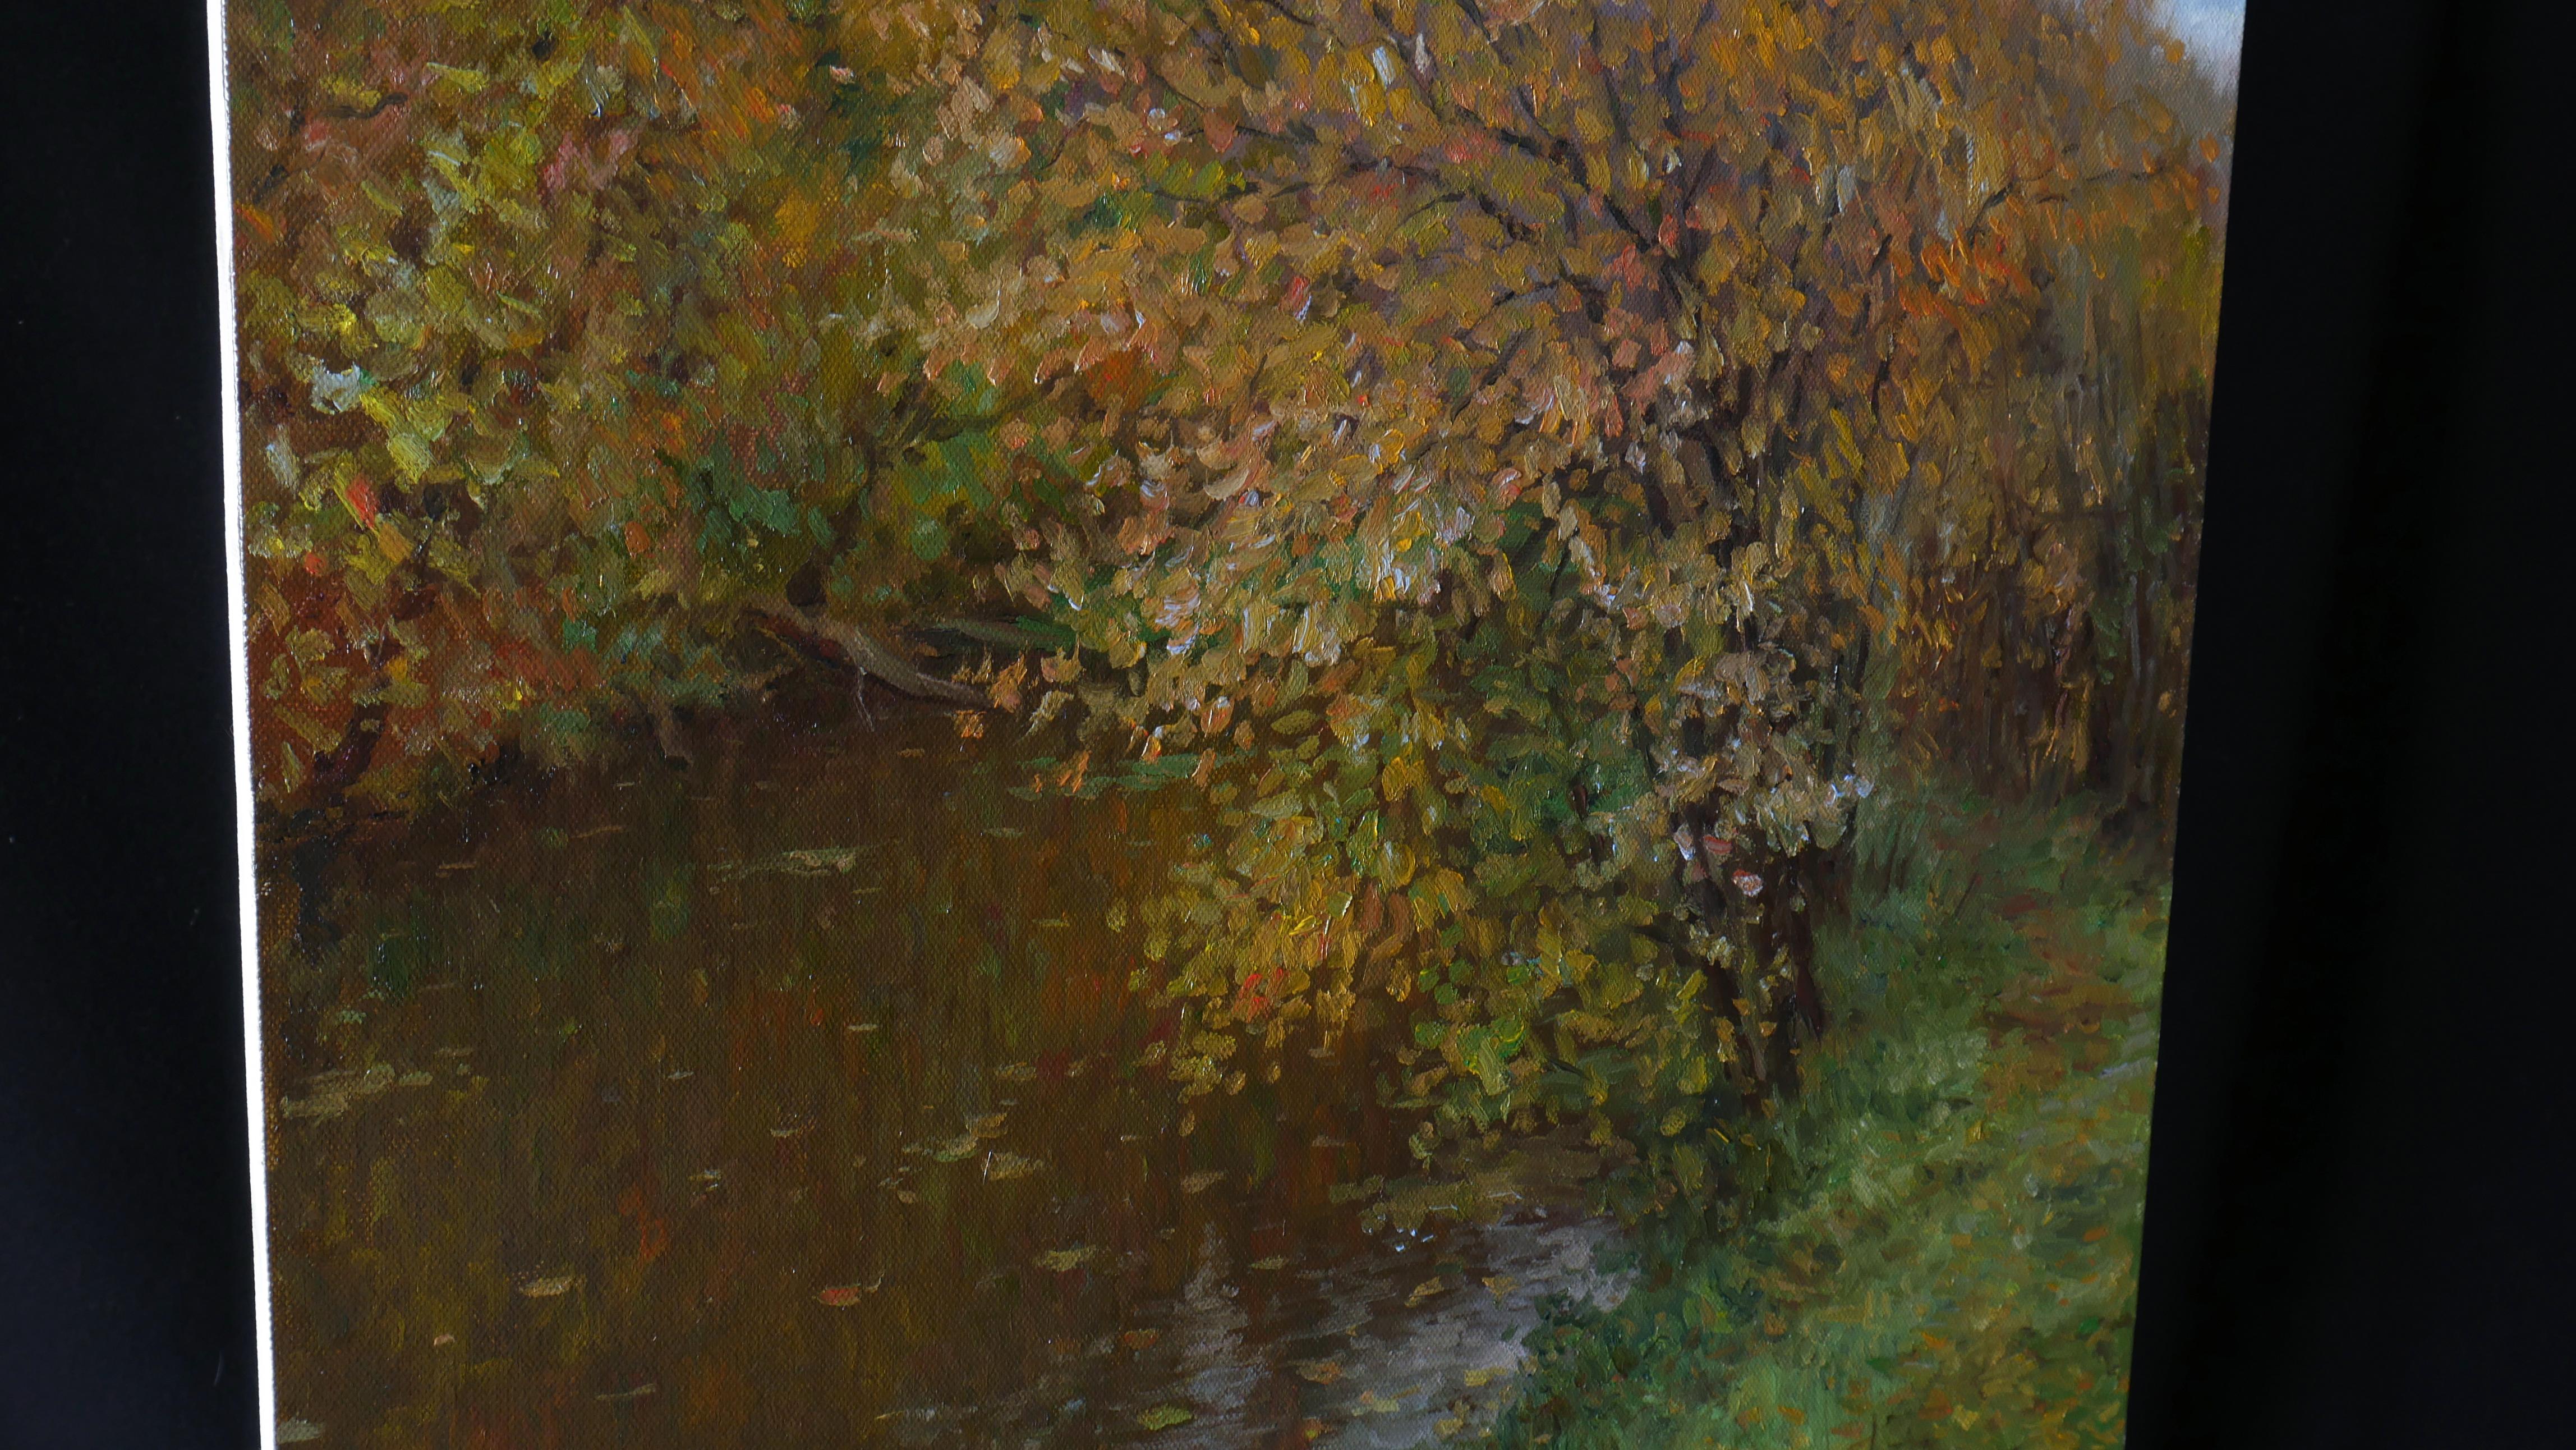 L'automne doré est l'une des saisons préférées de Nikolay. L'artiste est toujours inspiré par l'eau en automne. Flotter sur les feuilles de la rivière donne un sentiment de paix et de calme.

L'image est de l'auteur et originale. Il est signé au